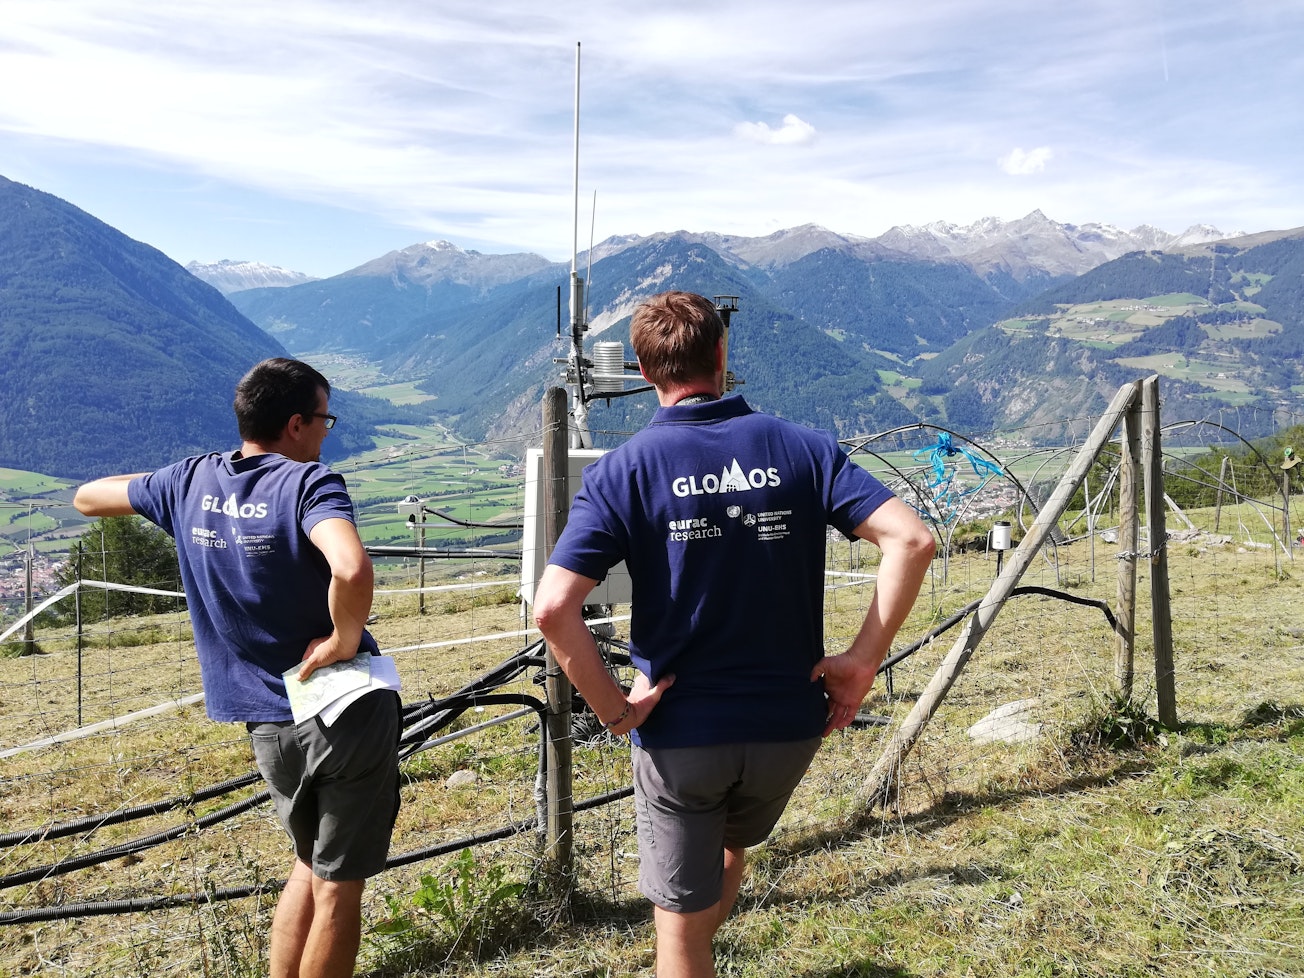 GLOMOS-Experten kooperieren mit anderen Eurac-Forschungsinstituten, um Wissensaustausch zu fördern und um die Anwendung inter- und transdisziplinäre Forschung im internationalen Umfeld zu unterstützen. Dieses Bild zeigt GLOMOS und Eurac's Alpine Environment Experten beim Besuch des LT(S)ER: Open air laboratory Matsch/Mazia